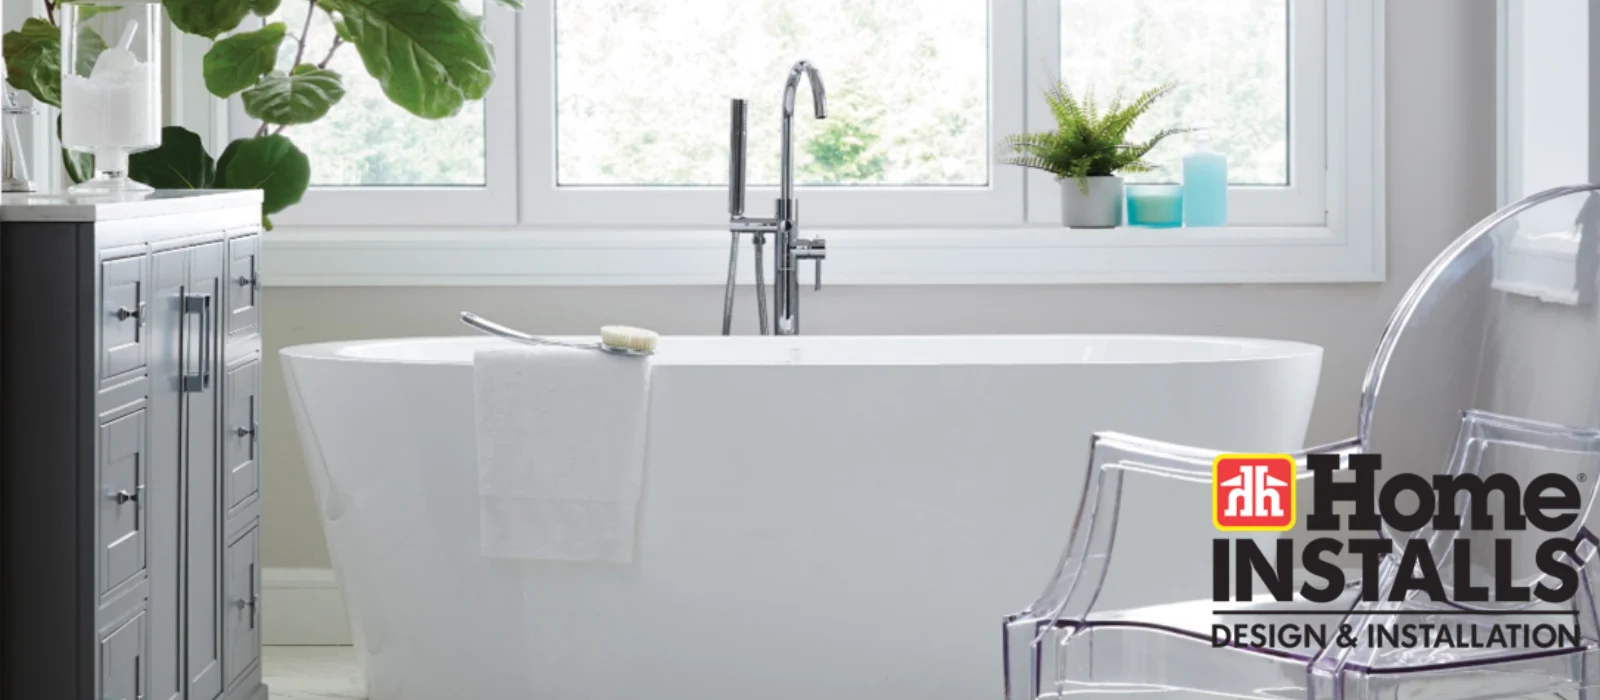 Home Installs - Bathroom Installs - Header Image